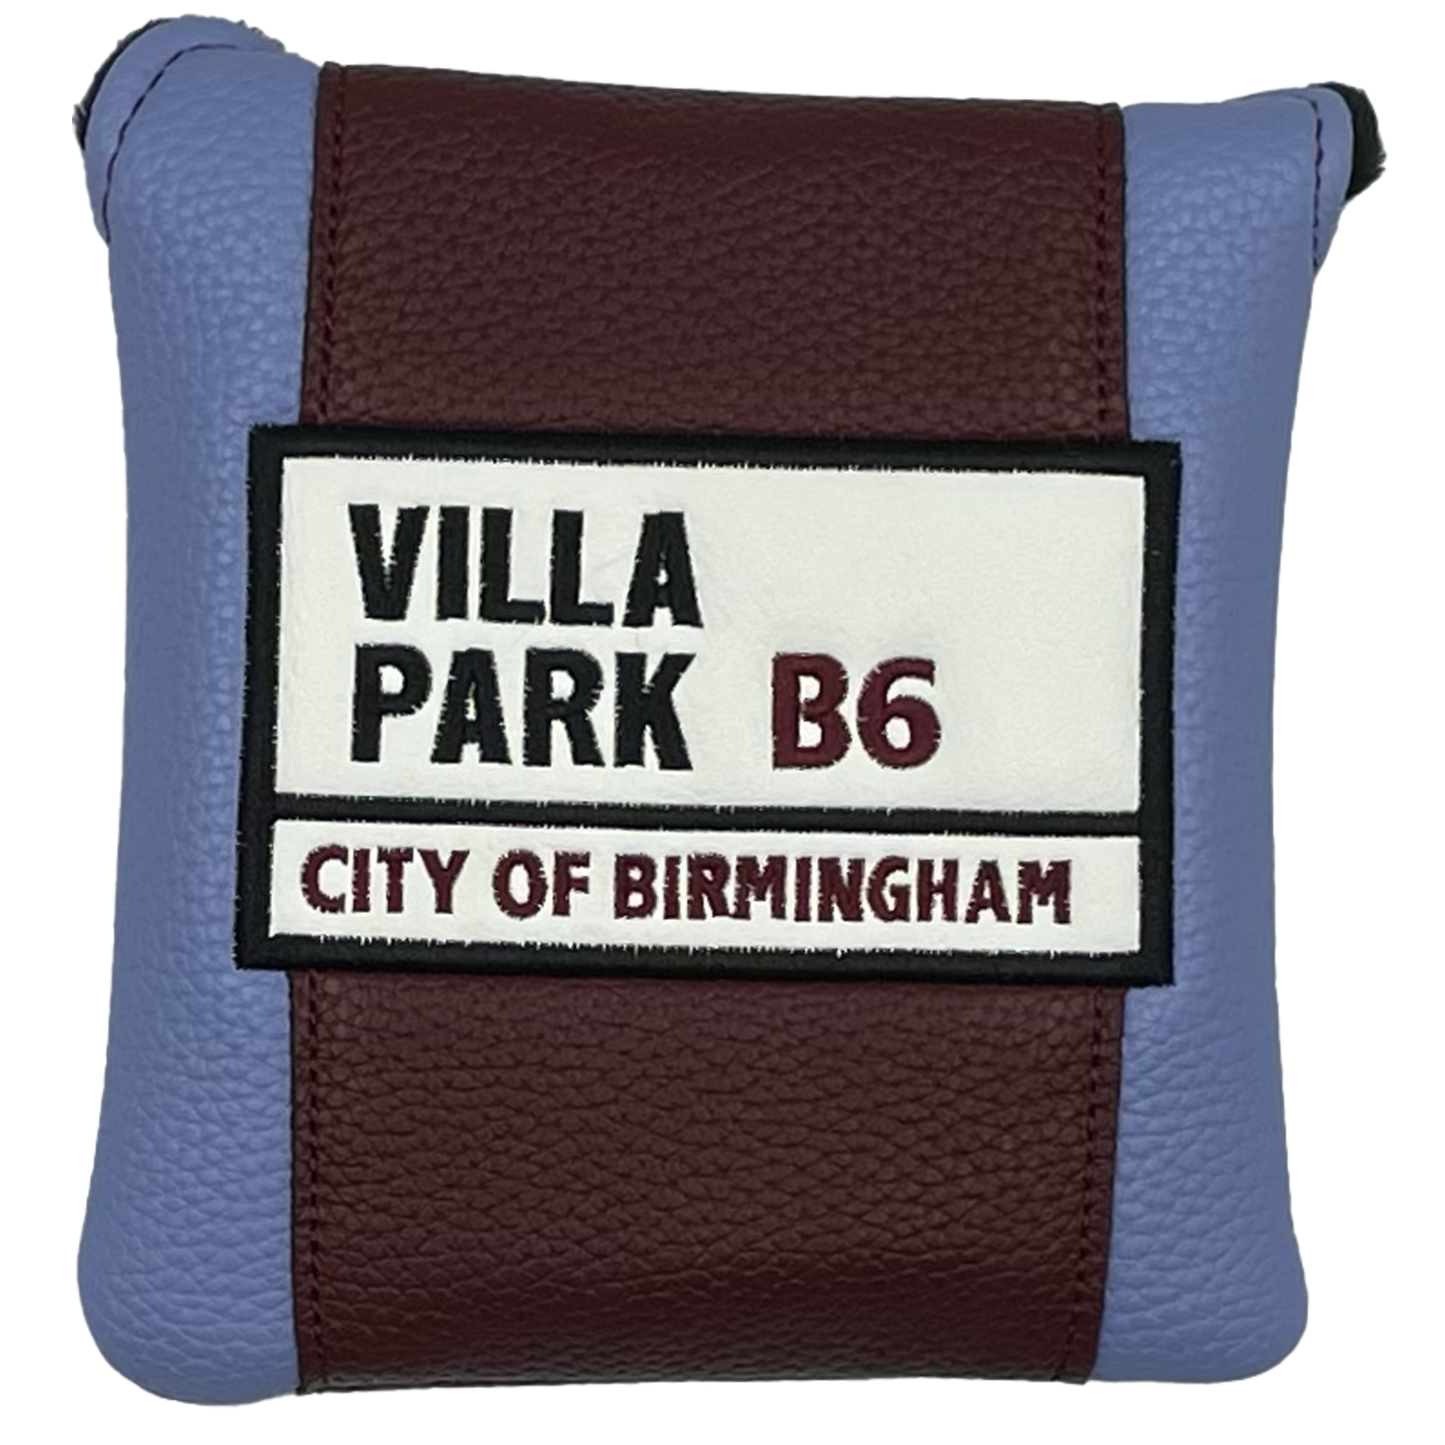 Aston Villa (Villa Park) Mallet Putter Cover